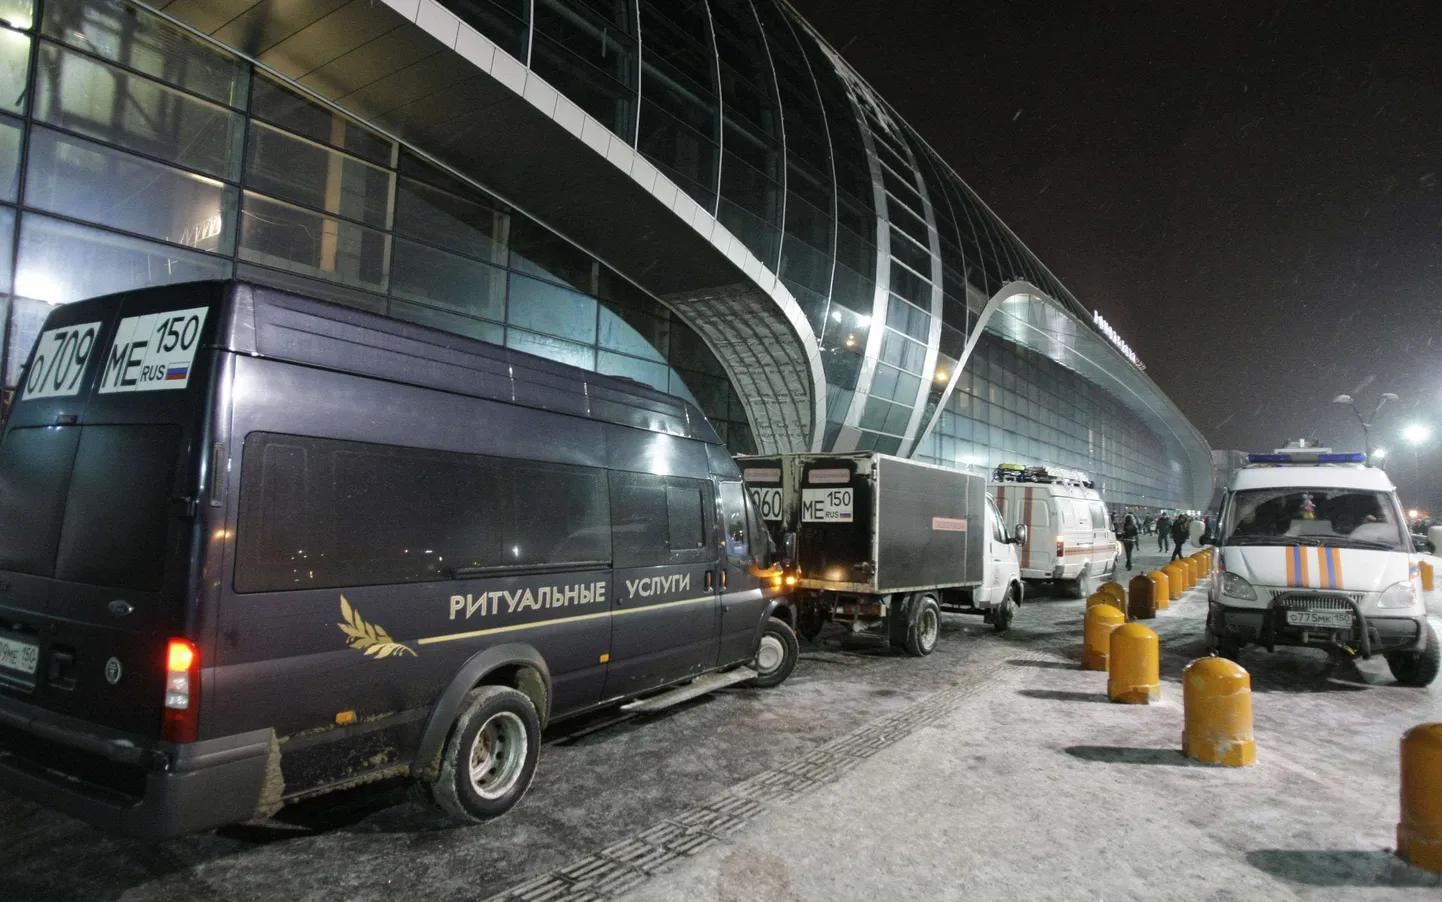 Domodedovo lennujaama ees seisavad matuseteenuste- ja kiirabiautod.